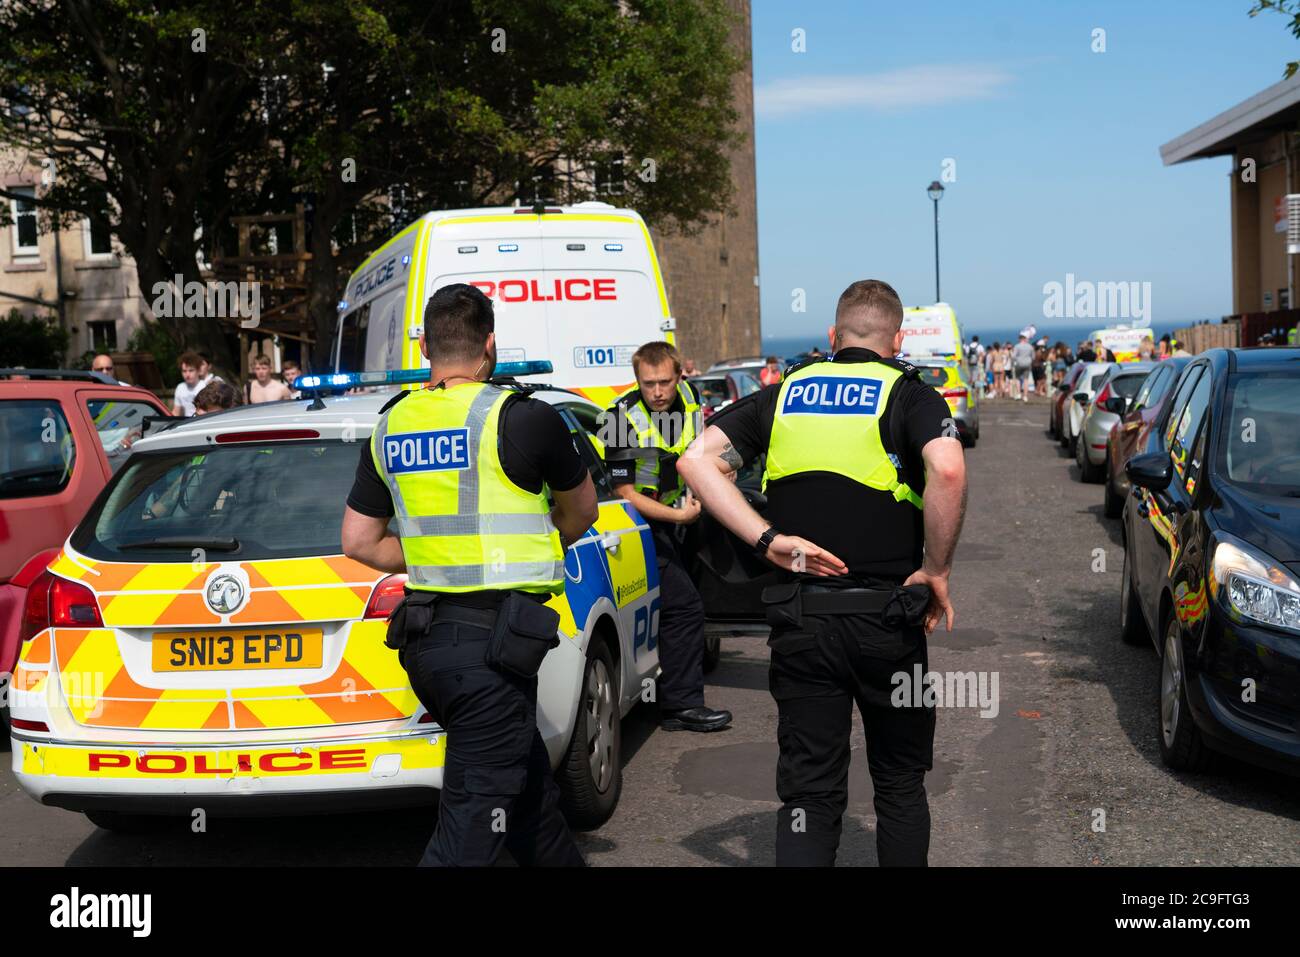 Edimburgo, Scozia, Regno Unito. 31 luglio 2020. La temperatura di 25°C e il sole hanno portato enormi folle a Portobello Beach fuori Edimburgo. Molti grandi gruppi di adolescenti stavano godendo la spiaggia e le bevande alcoliche erano molto popolari. Nella foto, intorno alle 15:00 si sono verificati problemi tra i giovani sulla spiaggia e i rinforzi della polizia sono stati rapidamente in scena e molte persone sono state rapite. Westbank Street è stata chiusa al traffico e circa 30 poliziotti stanno pattugliando la passeggiata. La polizia confisca l'alcool degli adolescenti che rimangono sulla spiaggia. Iain Masterton/Alamy Live News Foto Stock